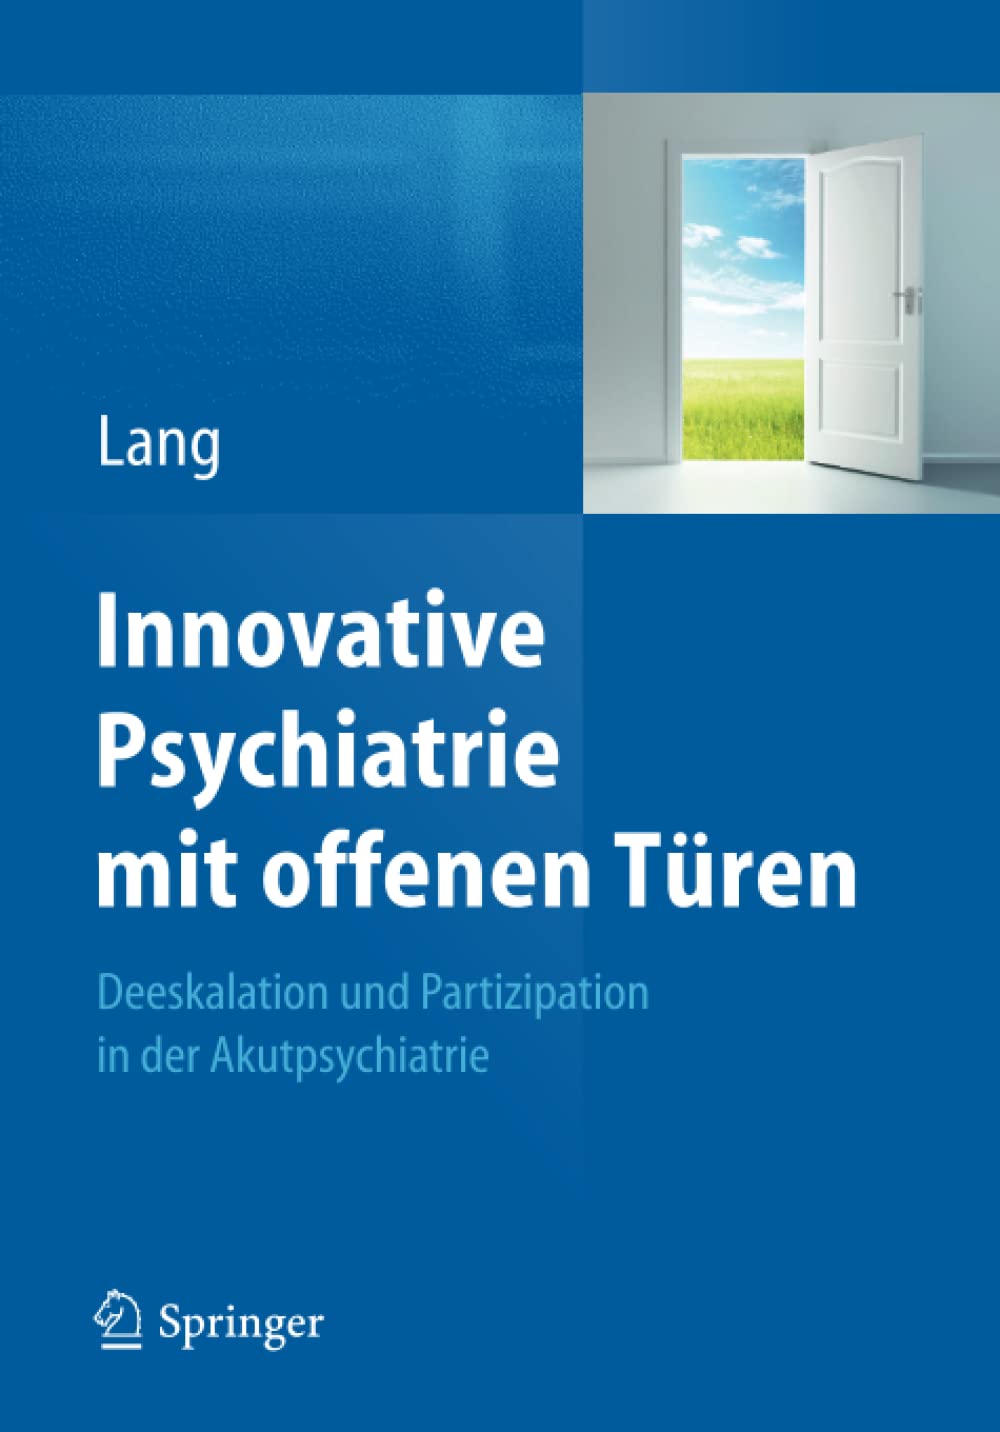 Innovative Psychiatrie mit offenen Türen: Deeskalation und Partizipation in der Akutpsychiatrie (German Edition)